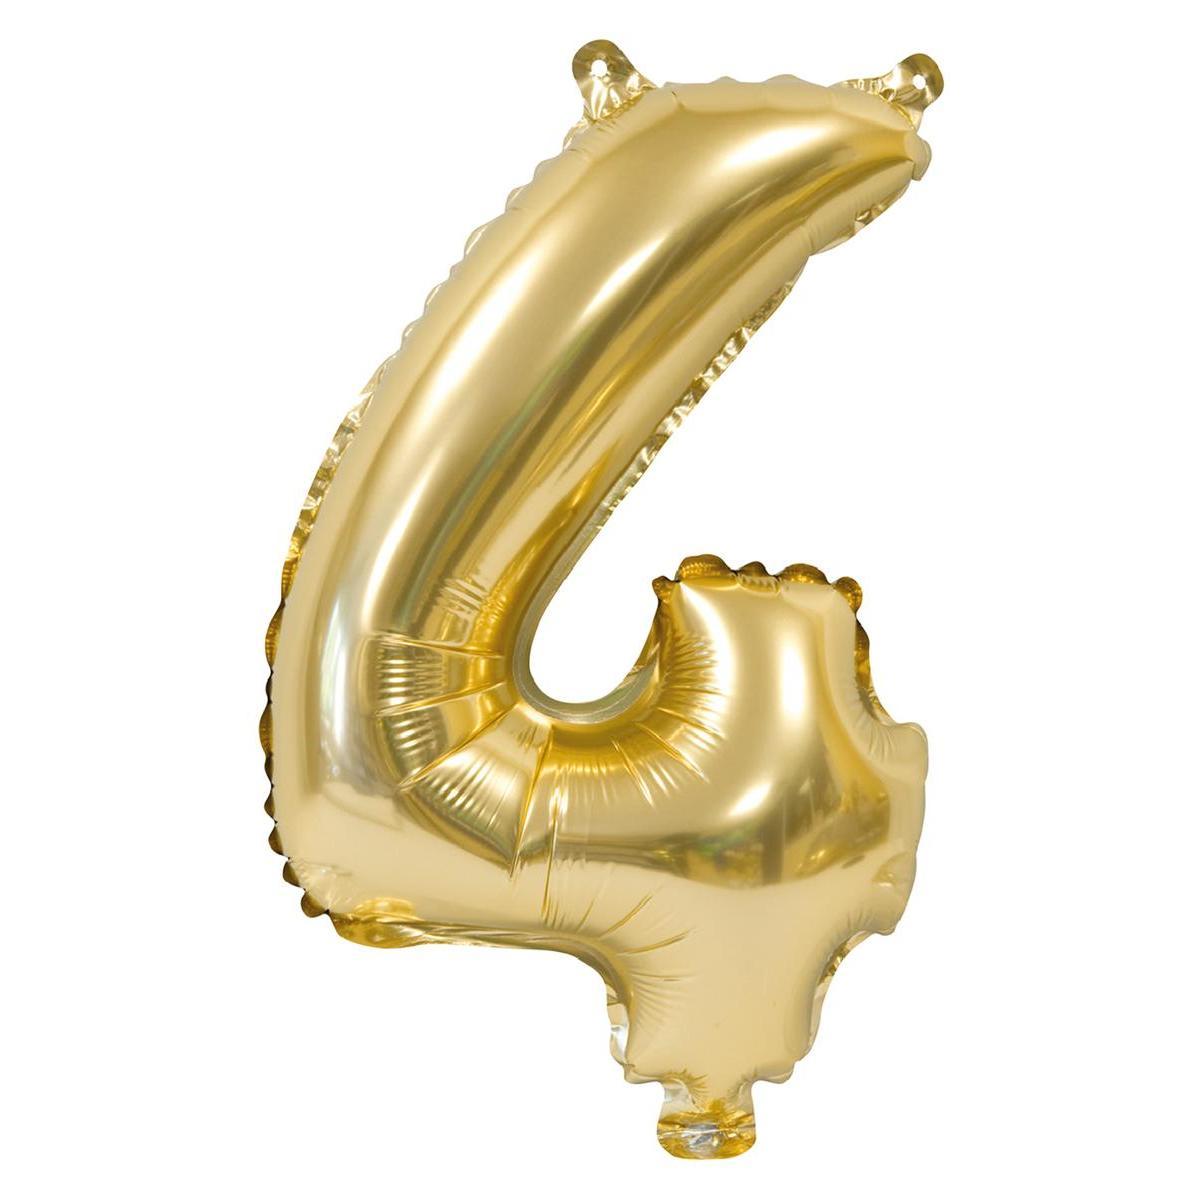 Ballon chiffre 4 - H 40 cm - Or - C'PARTY